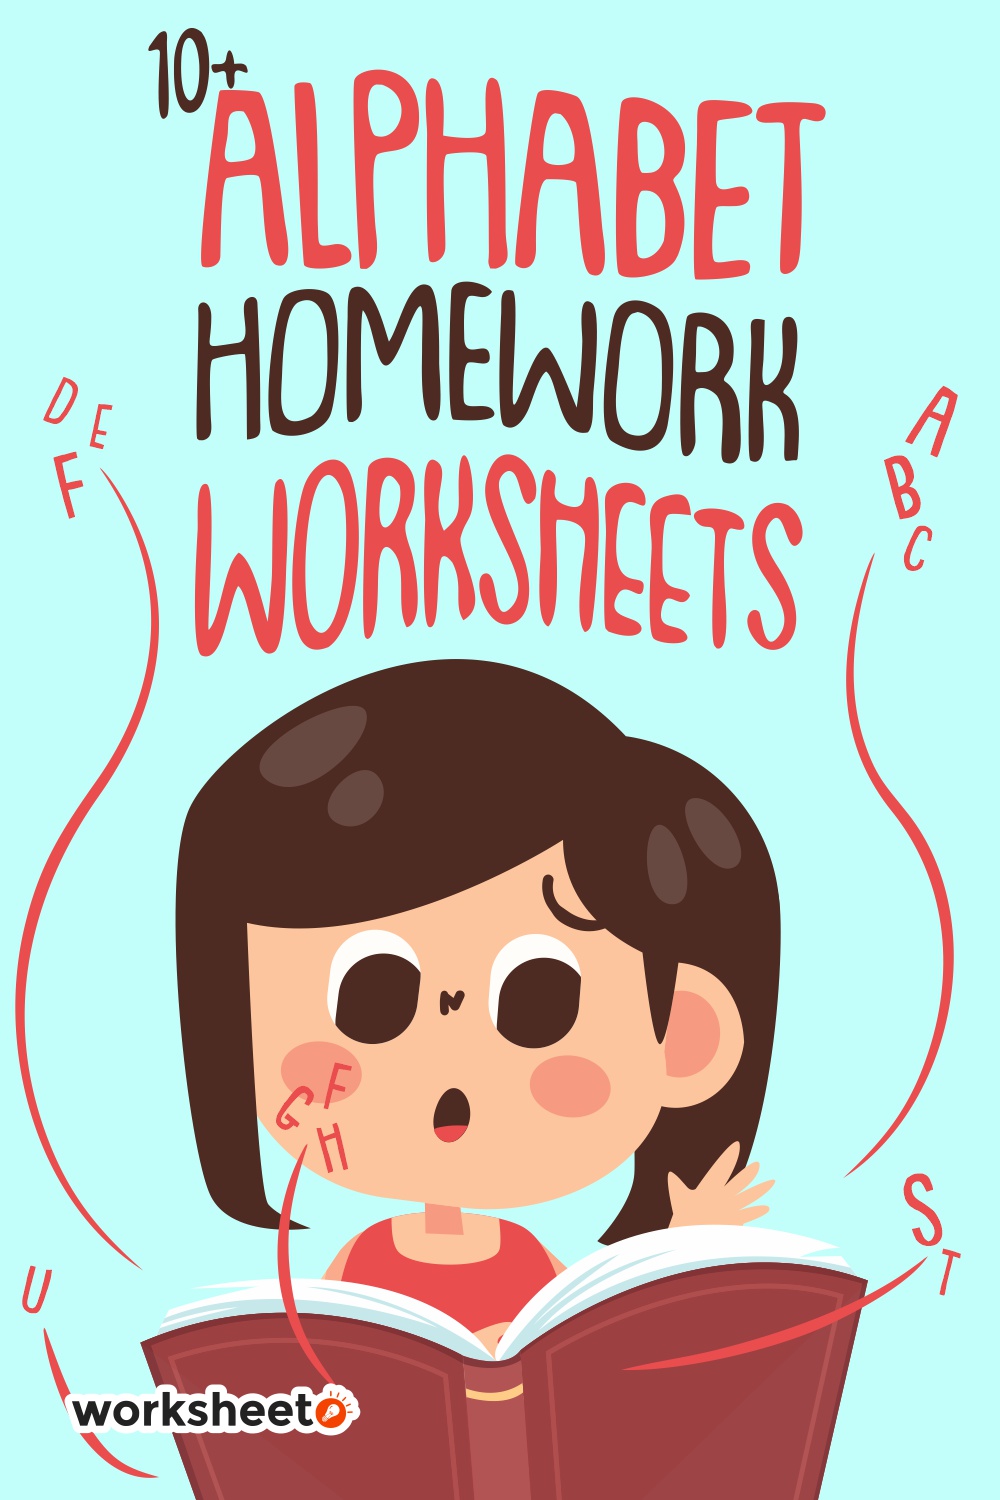 16 Images of Alphabet Homework Worksheets